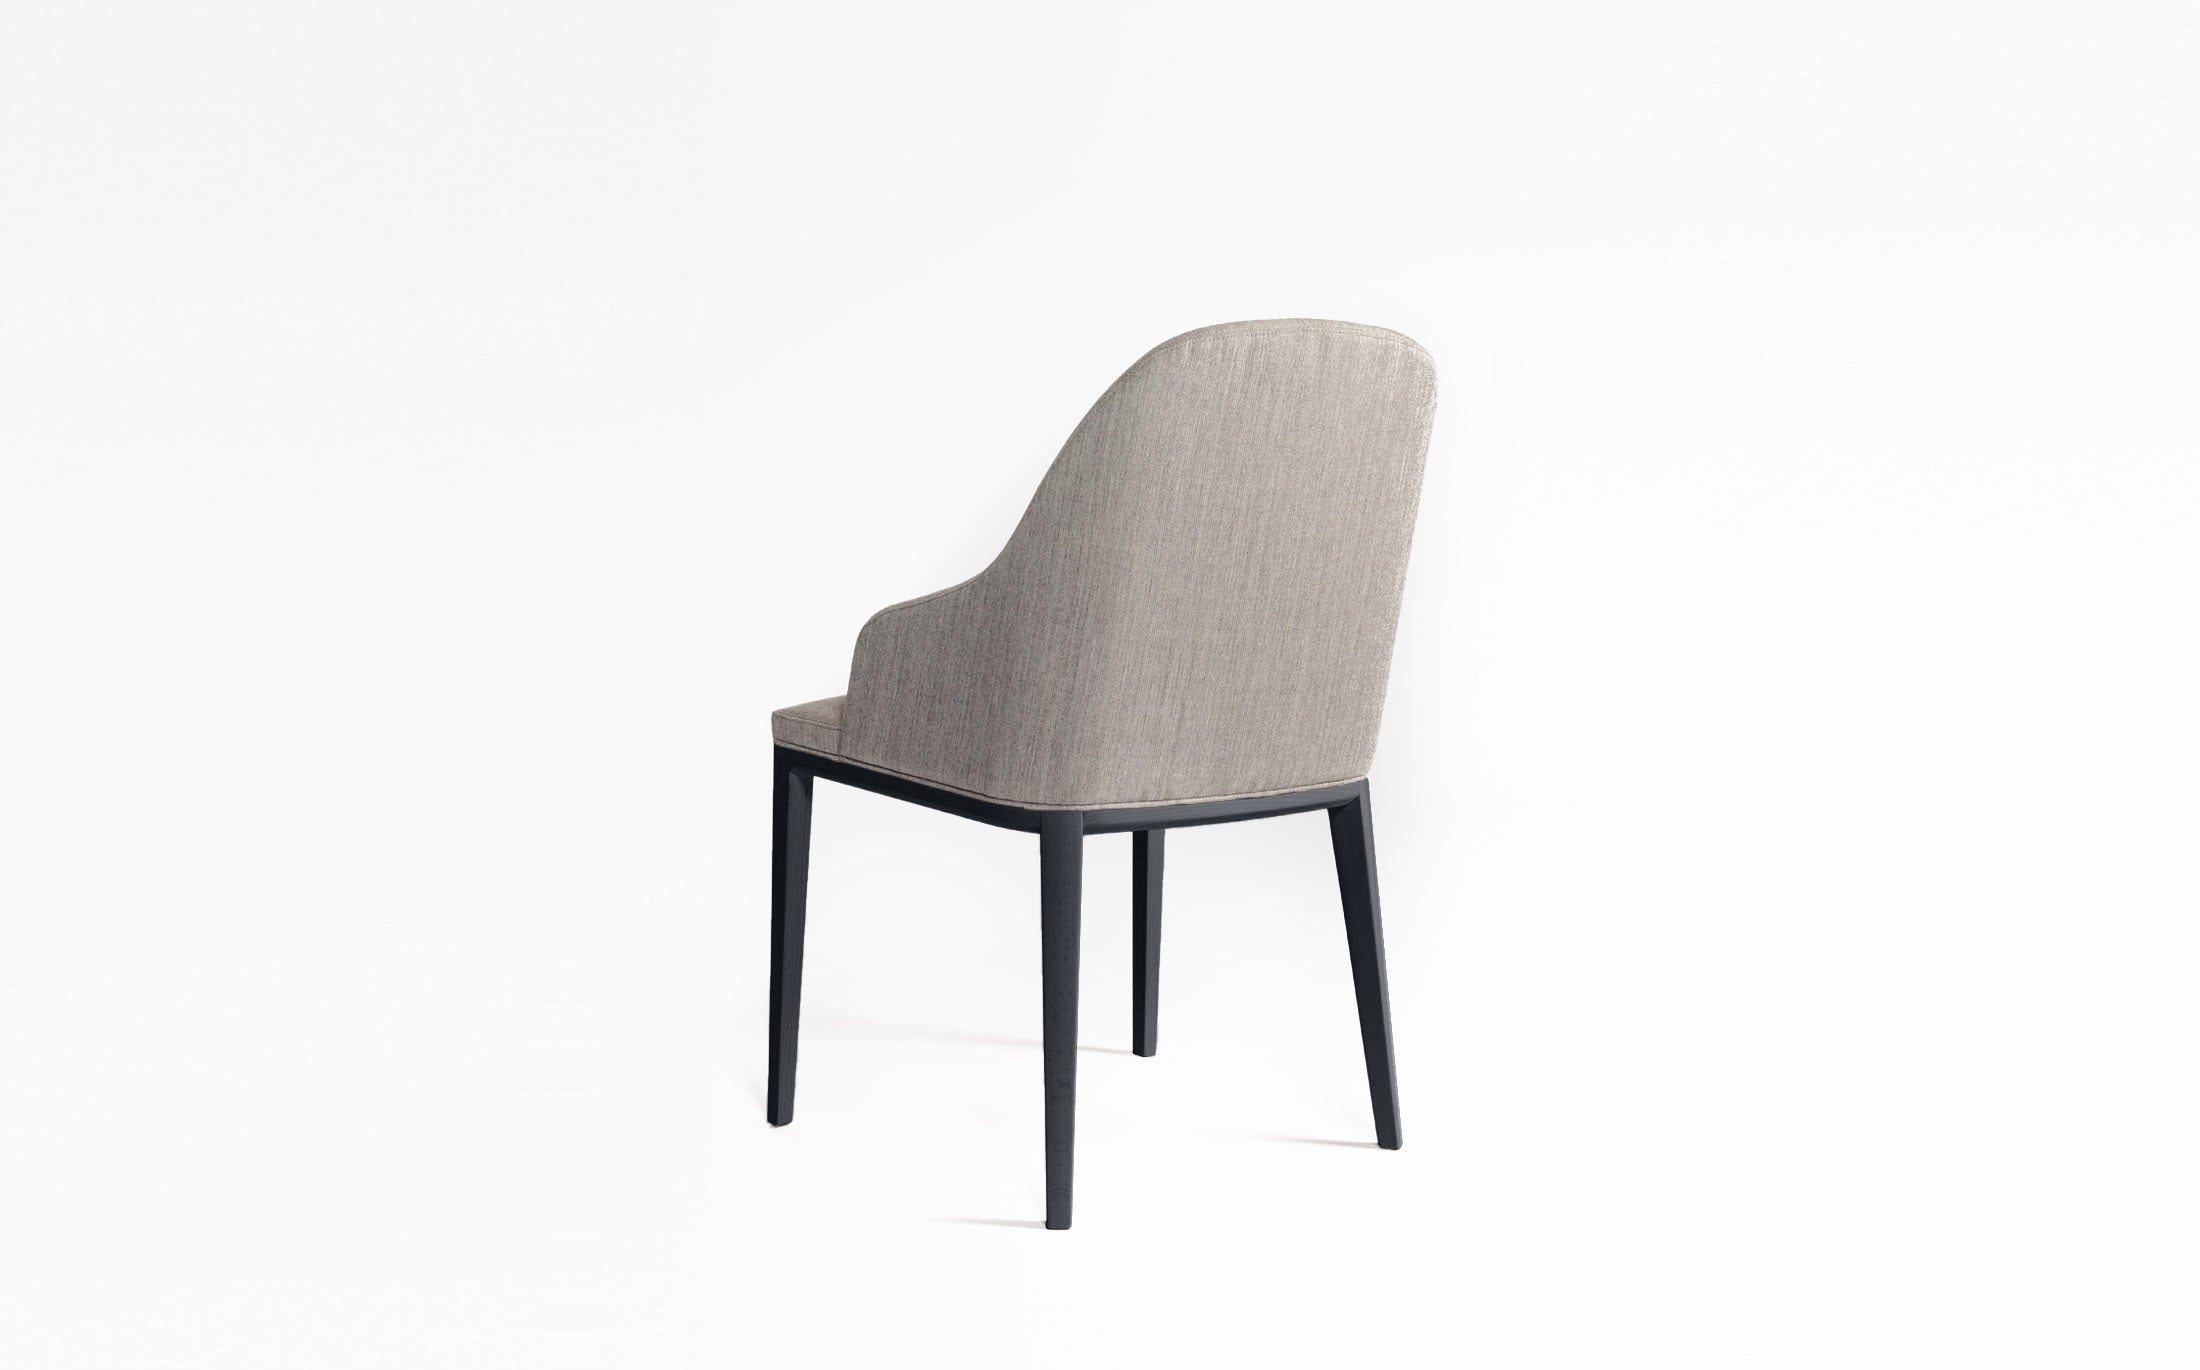 Philip half armchair #Seat materials_fabric1 riff 13/08